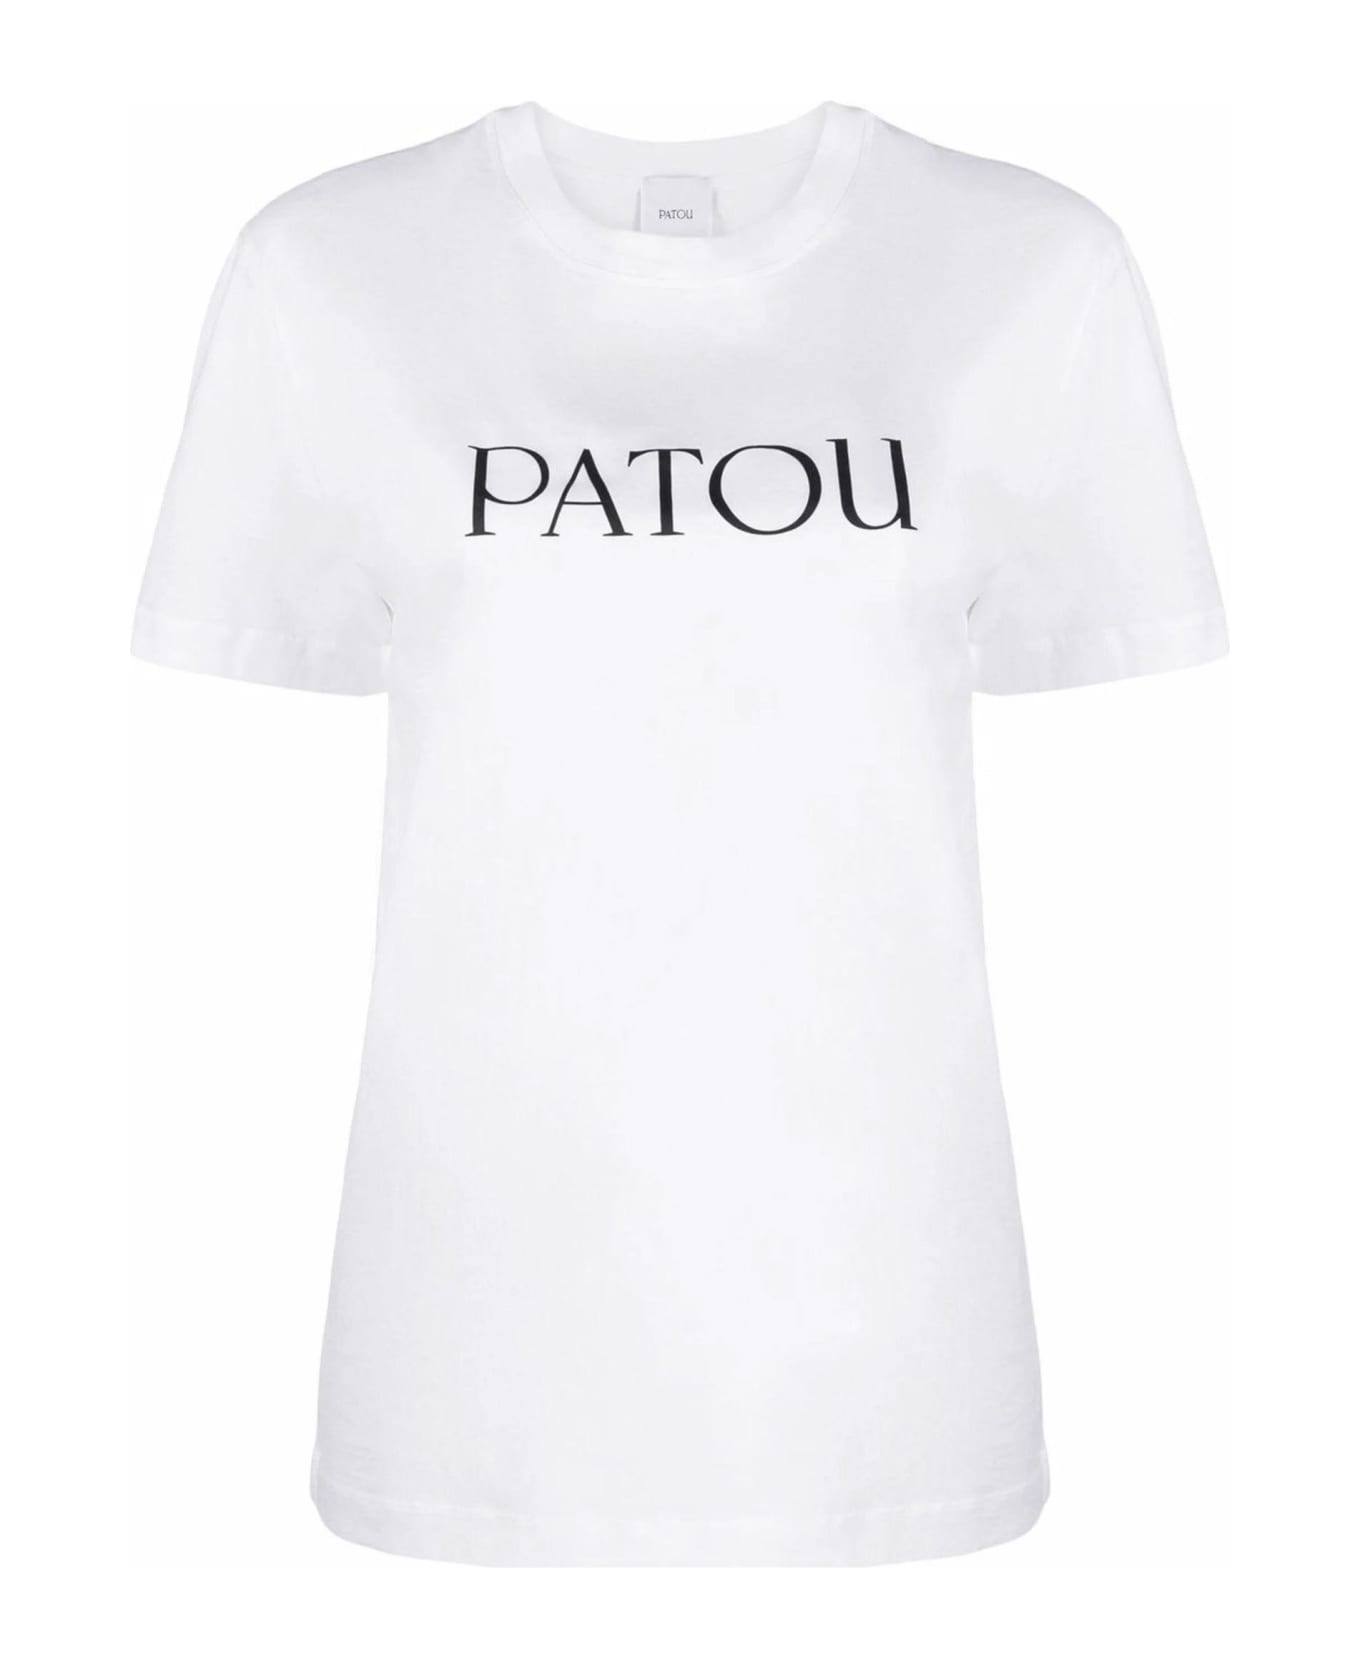 Patou White Organic Cotton T-shirt - White Tシャツ